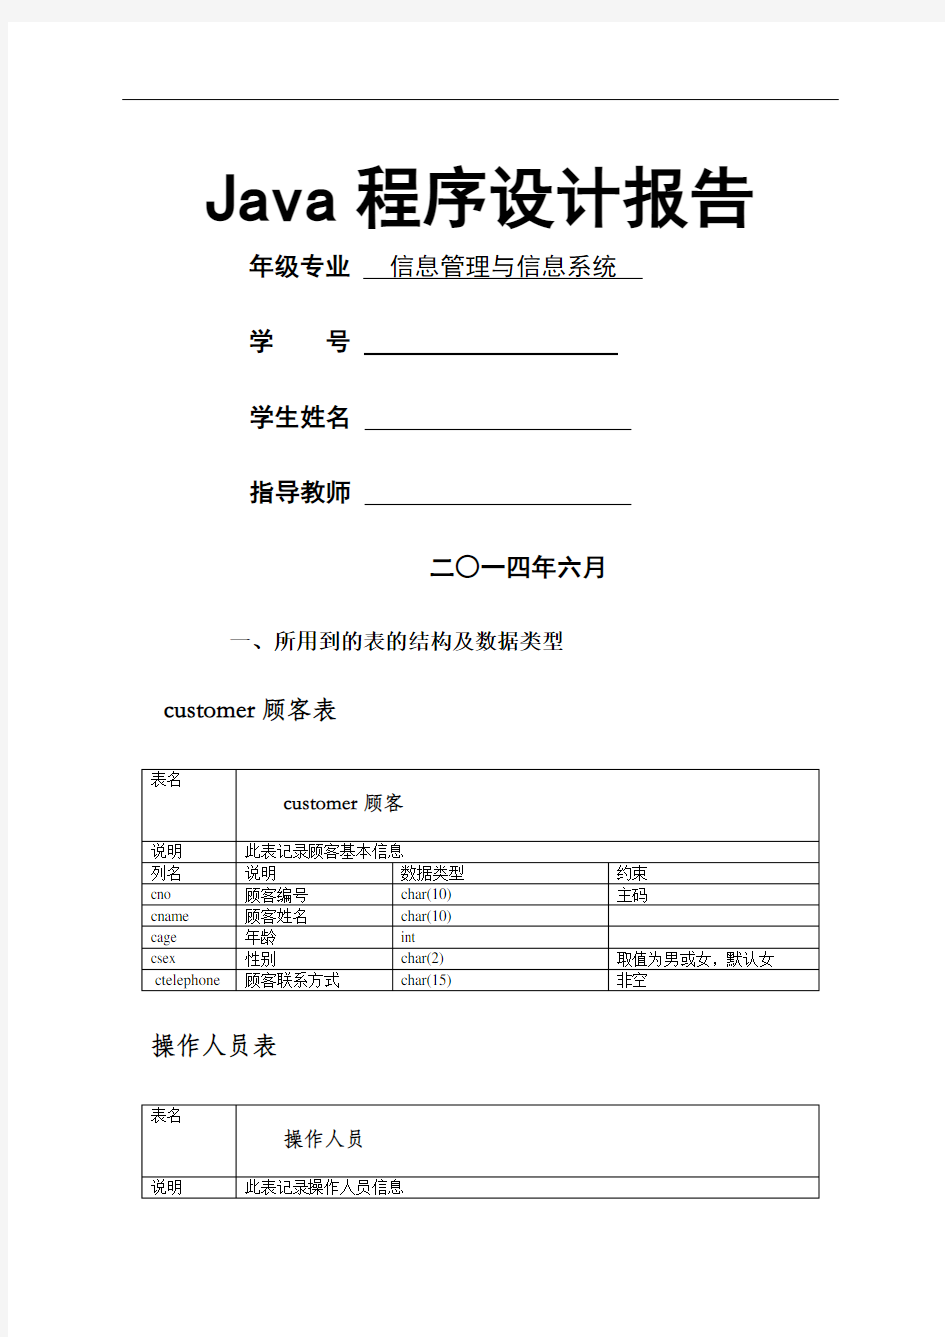 面向对象课程设计java大作业报告含源代码